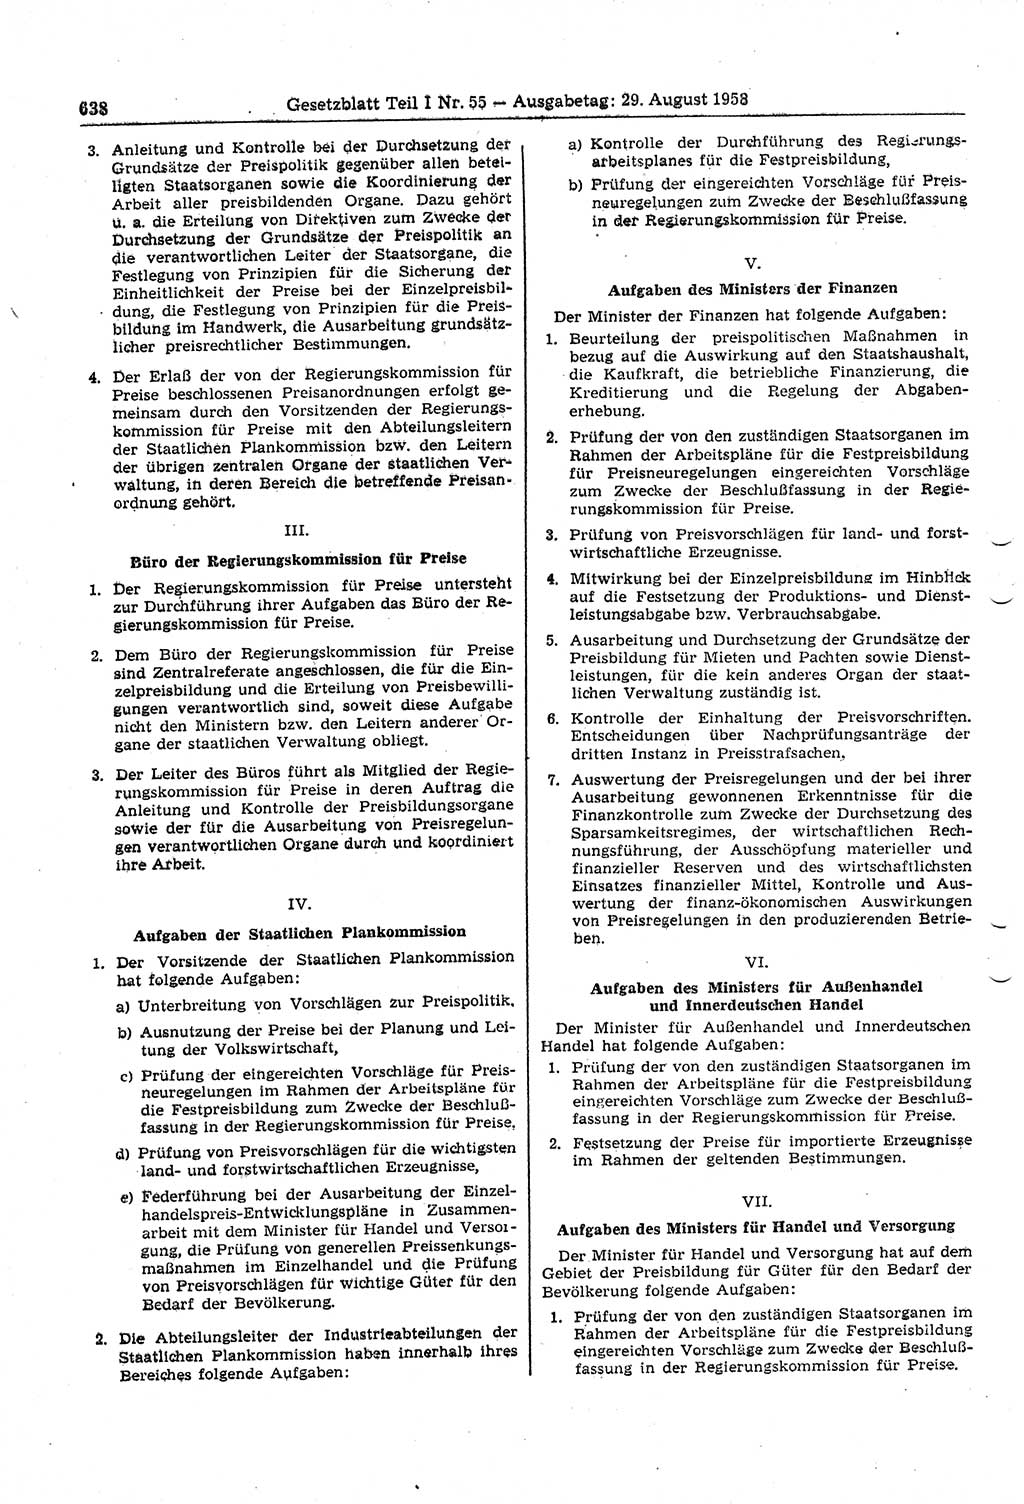 Gesetzblatt (GBl.) der Deutschen Demokratischen Republik (DDR) Teil Ⅰ 1958, Seite 638 (GBl. DDR Ⅰ 1958, S. 638)